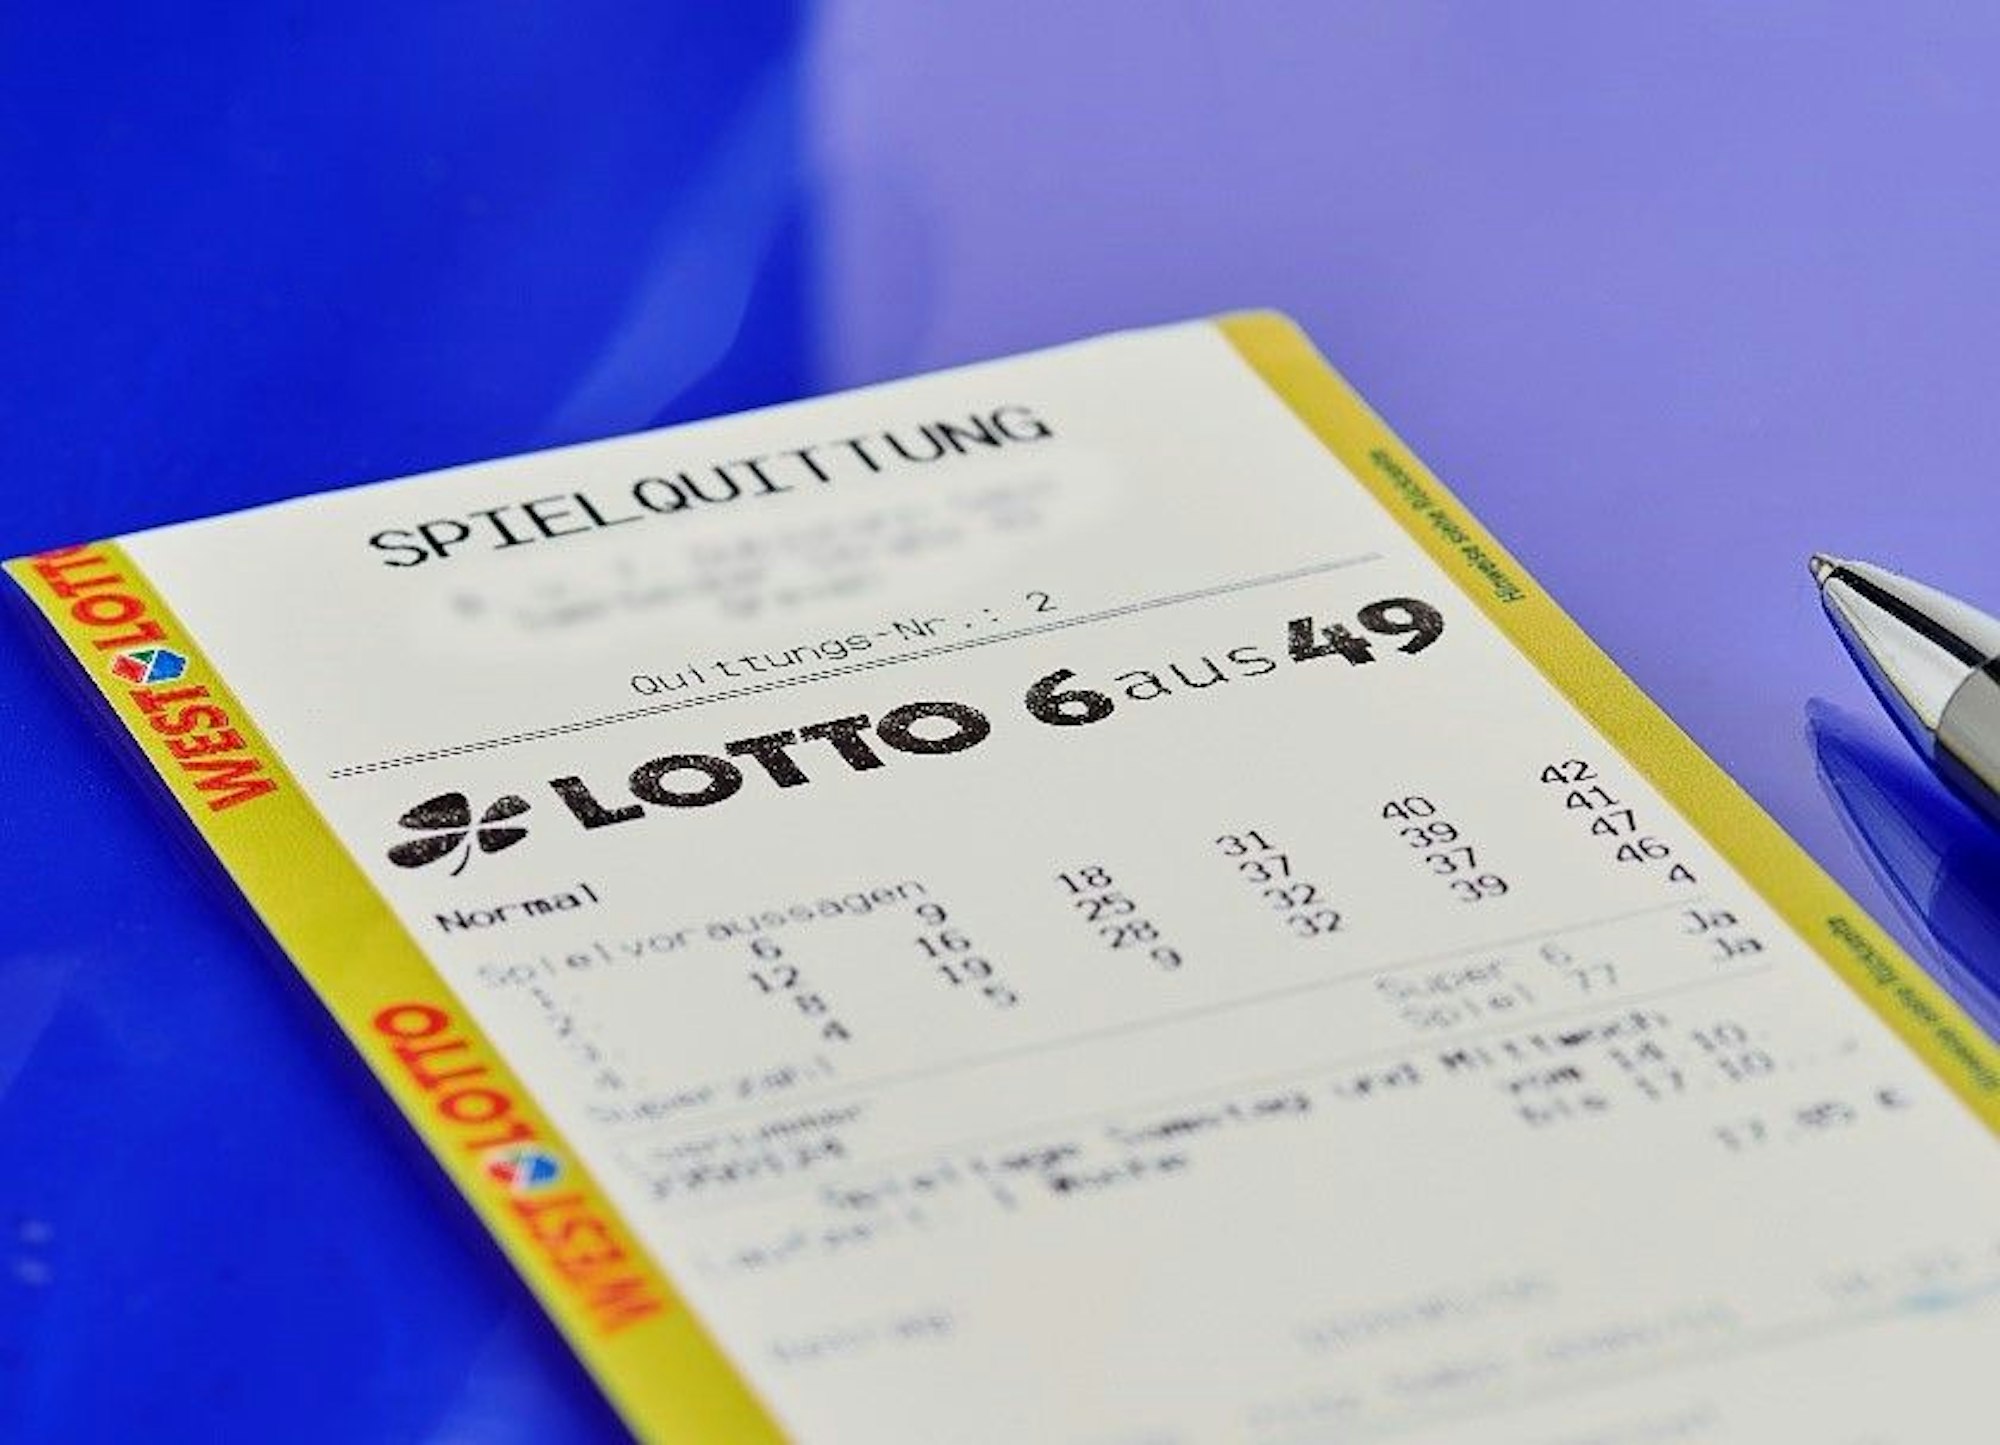 Für einen Spielteilnehmer aus dem Raum Dortmund hat sich der Einsatz von 18,65 Euro bei LOTTO 6aus49 voll ausgezahlt: Sechs richtige Kreuzchen verhelfen dem Glückspilz zu einem Gewinn von 7,5 Millionen Euro.